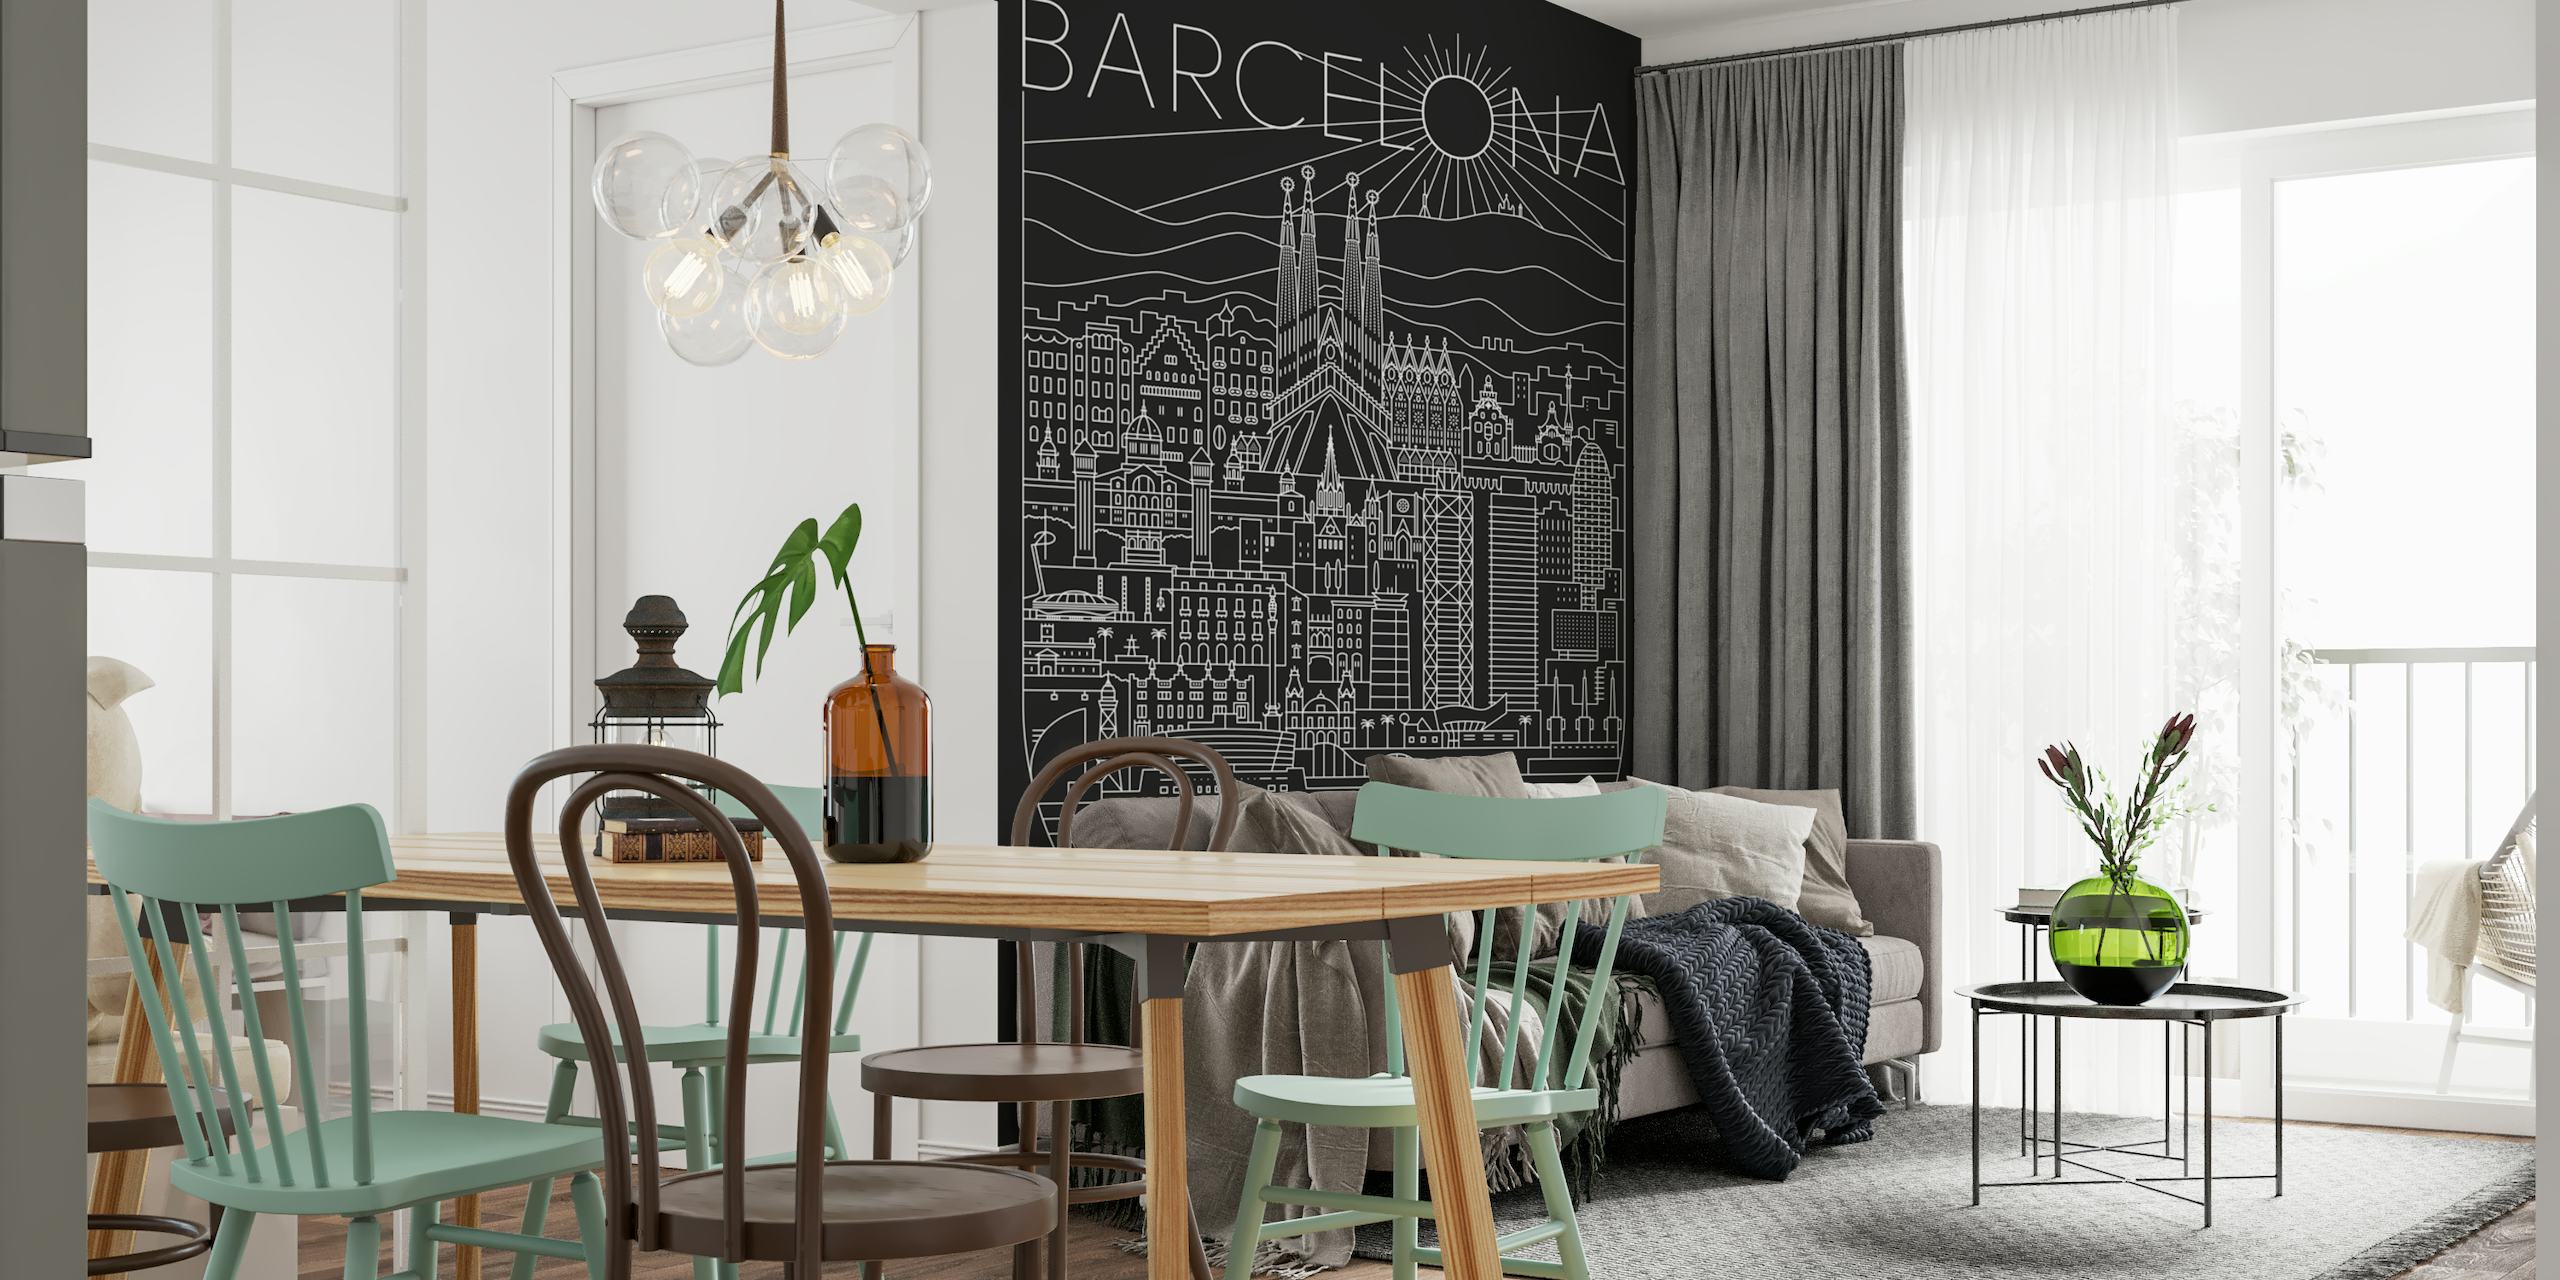 Liniowa fototapeta przedstawiająca pejzaż Barcelony z atrakcjami takimi jak Sagrada Familia